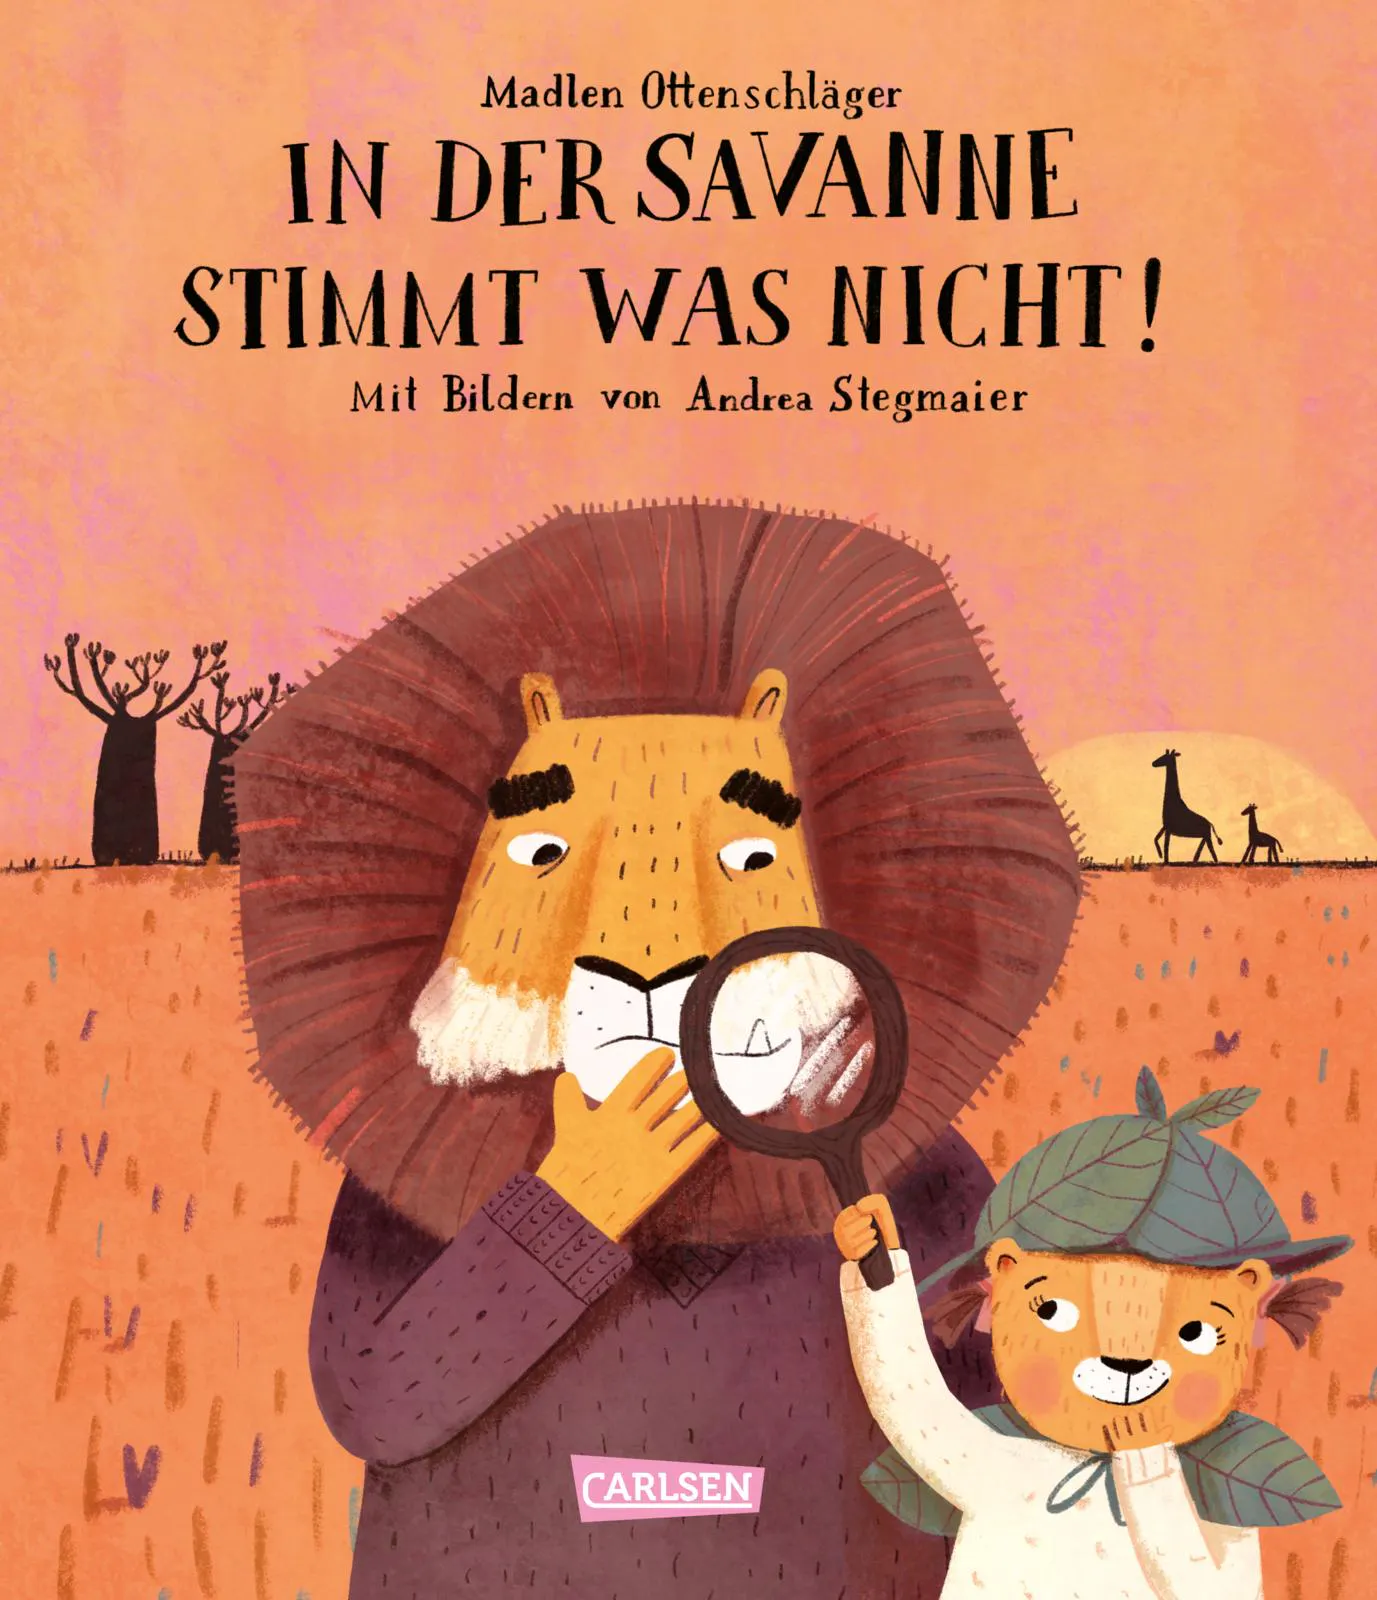 Cover von "In der Savanne stimmt was nicht!" von Madlen Ottenschläger und Andrea Stegmaier aus dem Carlsen Verlag